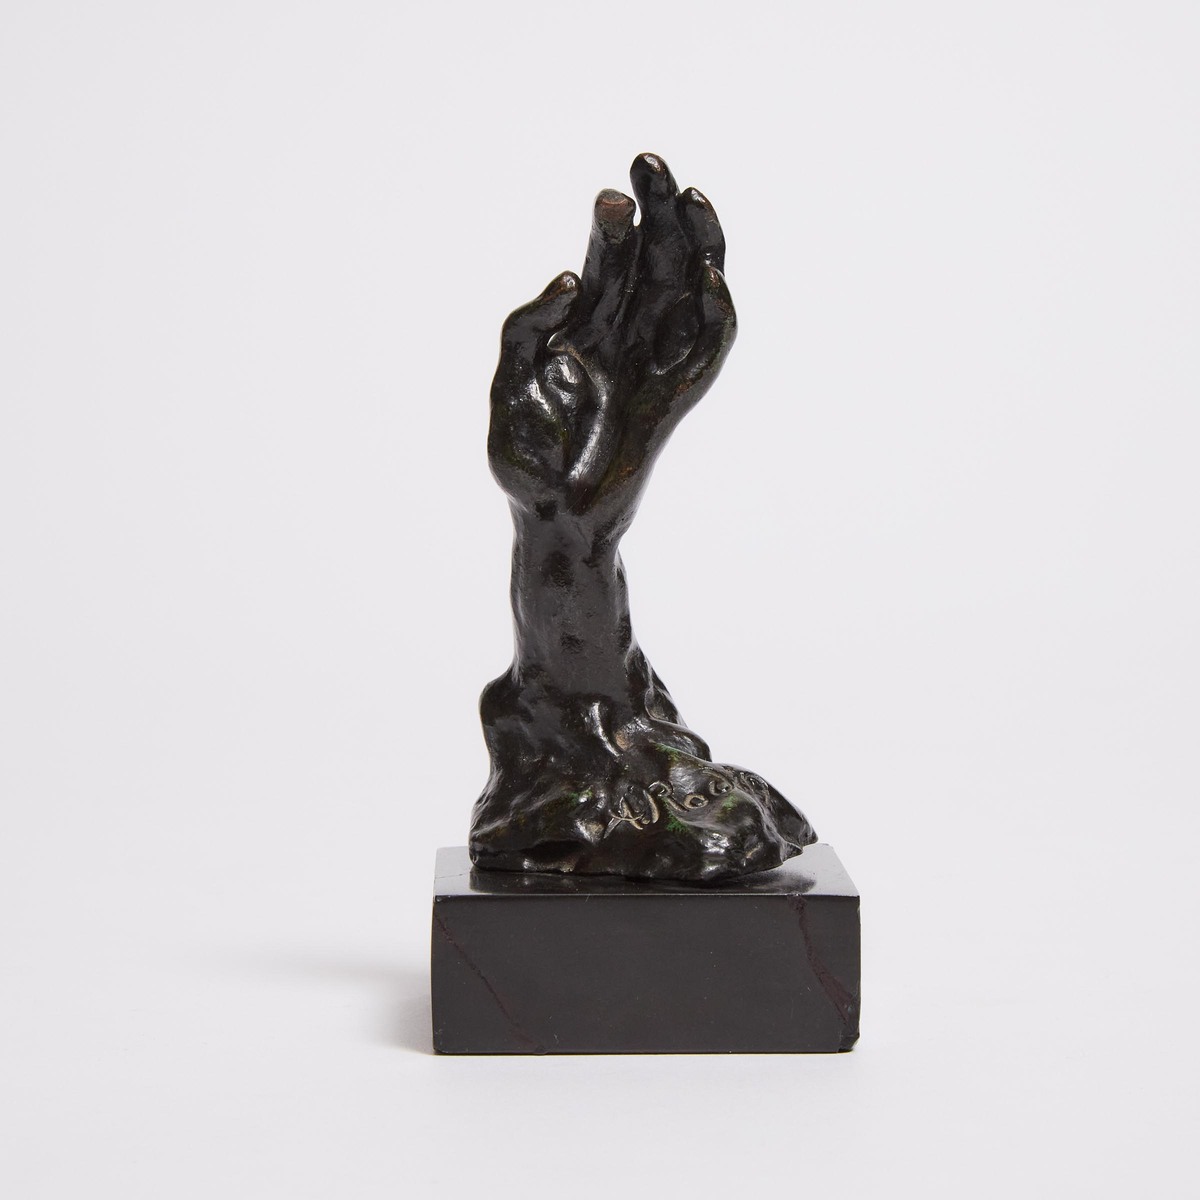 Auguste Rodin (1840-1917), ÉTUDE DE MAIN GAUCHE, HAND NO. 38, CONCEIVED CA. 1885-1900; THIS BRONZE V